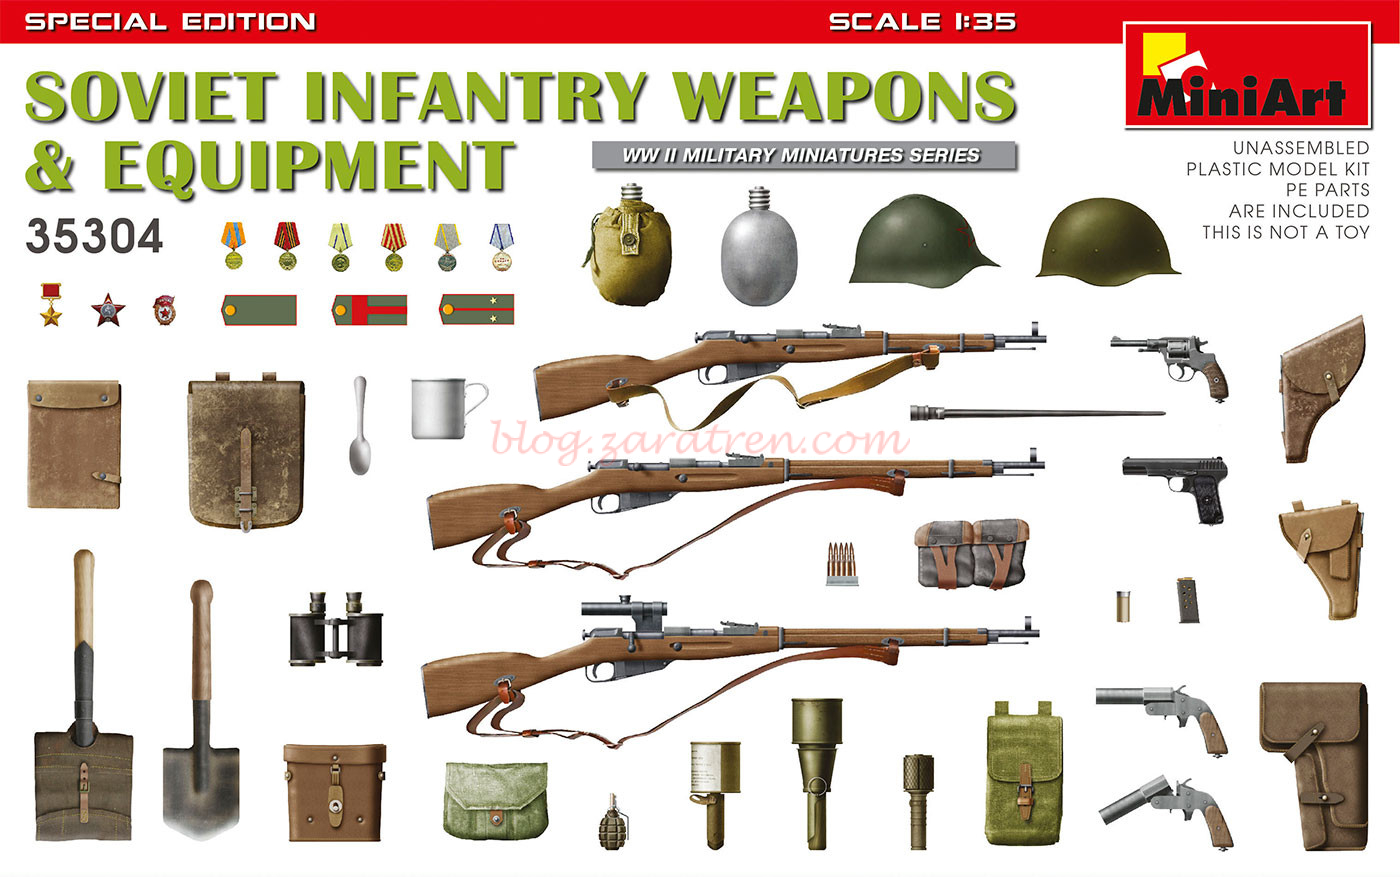 Miniart – Figuras Armas y Equipo de Infantería Soviética, Escala 1:35, Ref: 35304